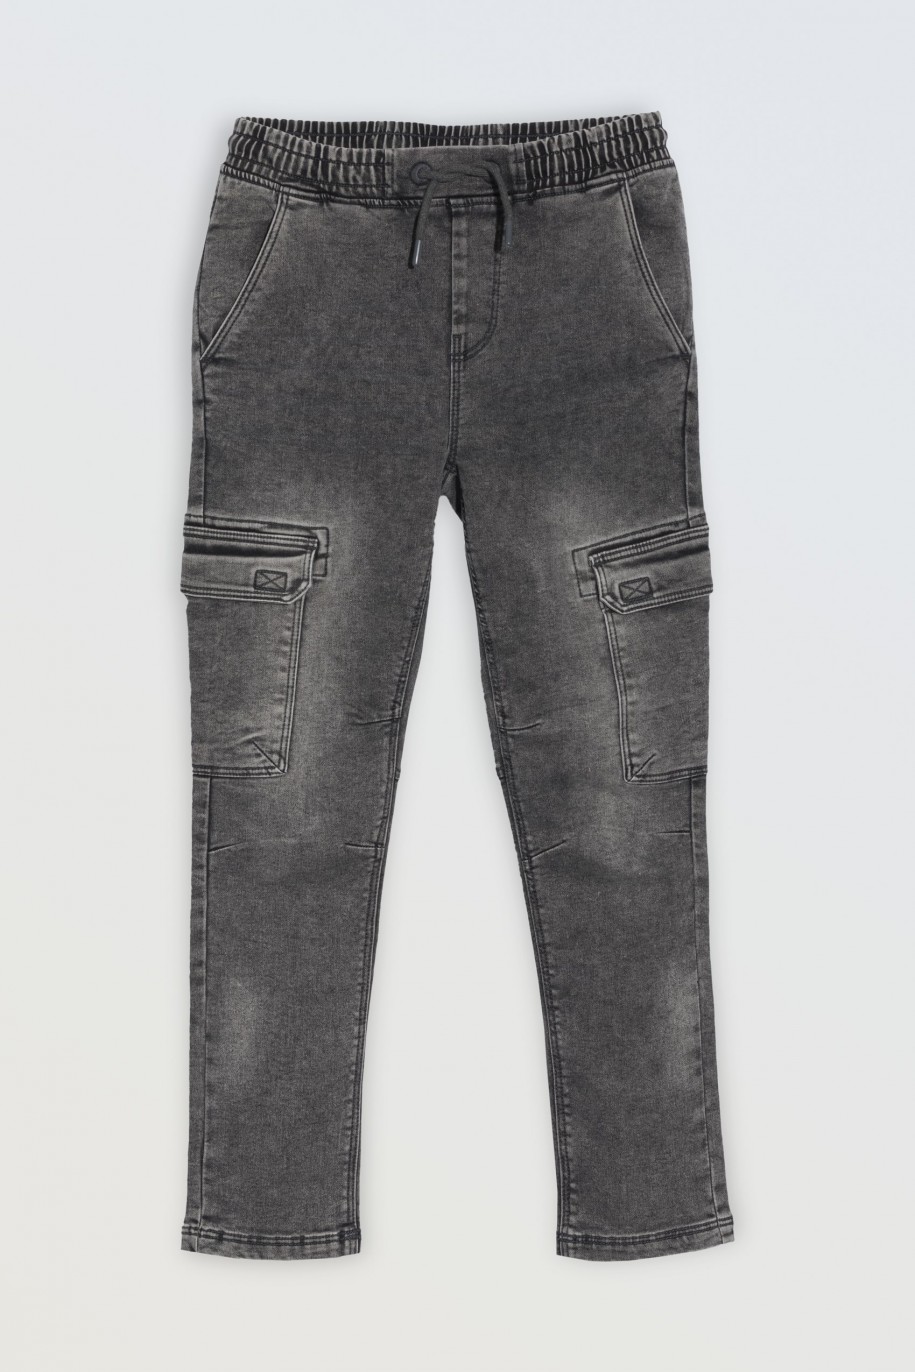 Czarne jeansowe spodnie typu cargo z przestrzennymi kieszeniami - 46469